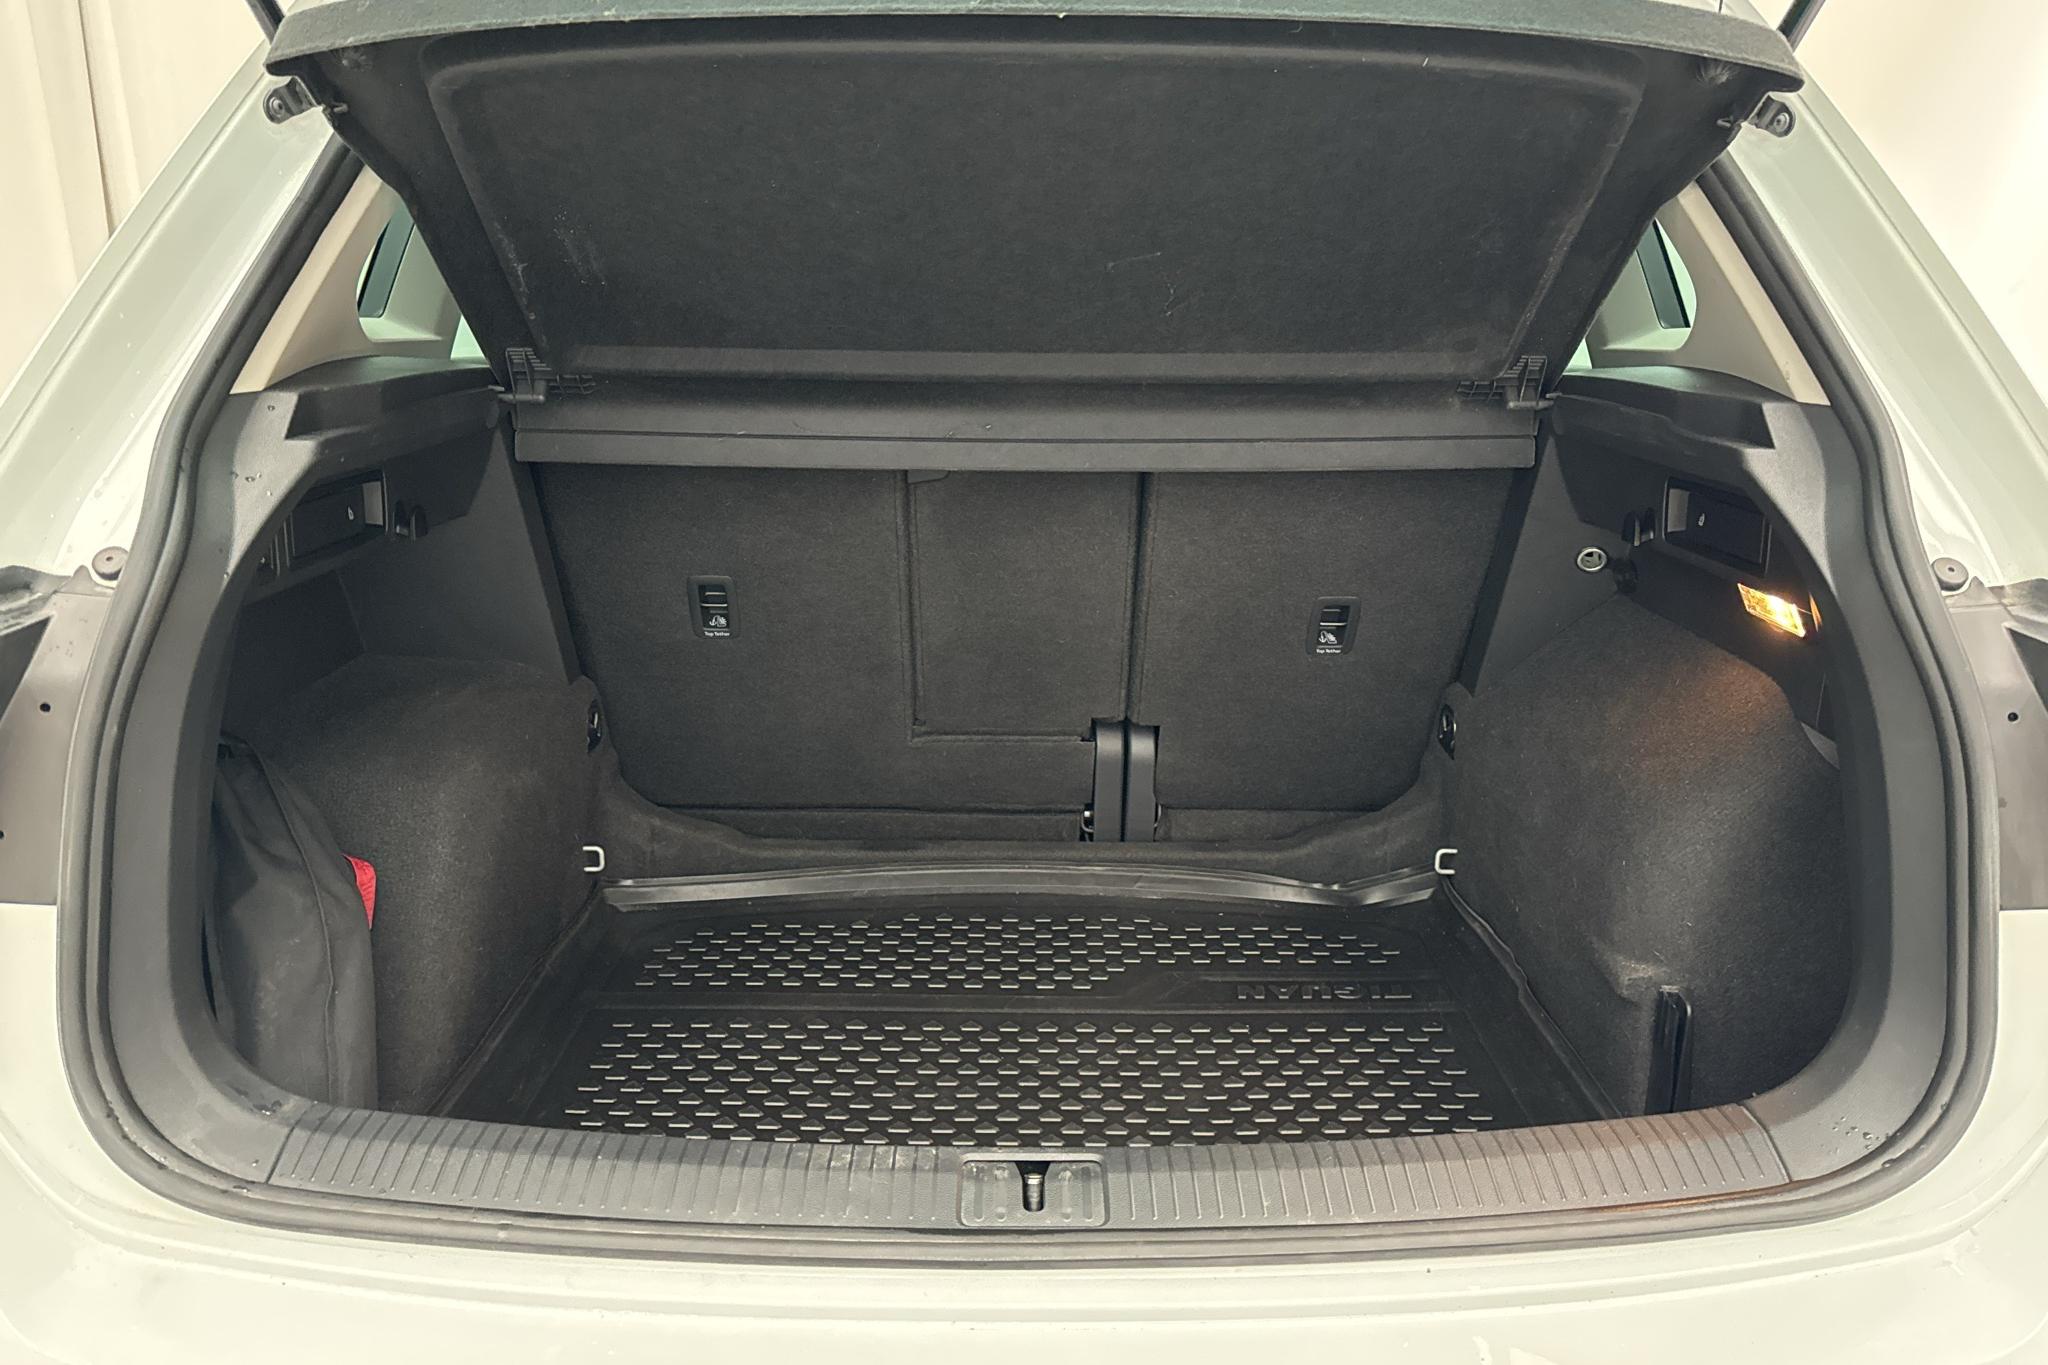 VW Tiguan 2.0 TDI 4MOTION (150hk) - 88 830 km - Automatic - white - 2021